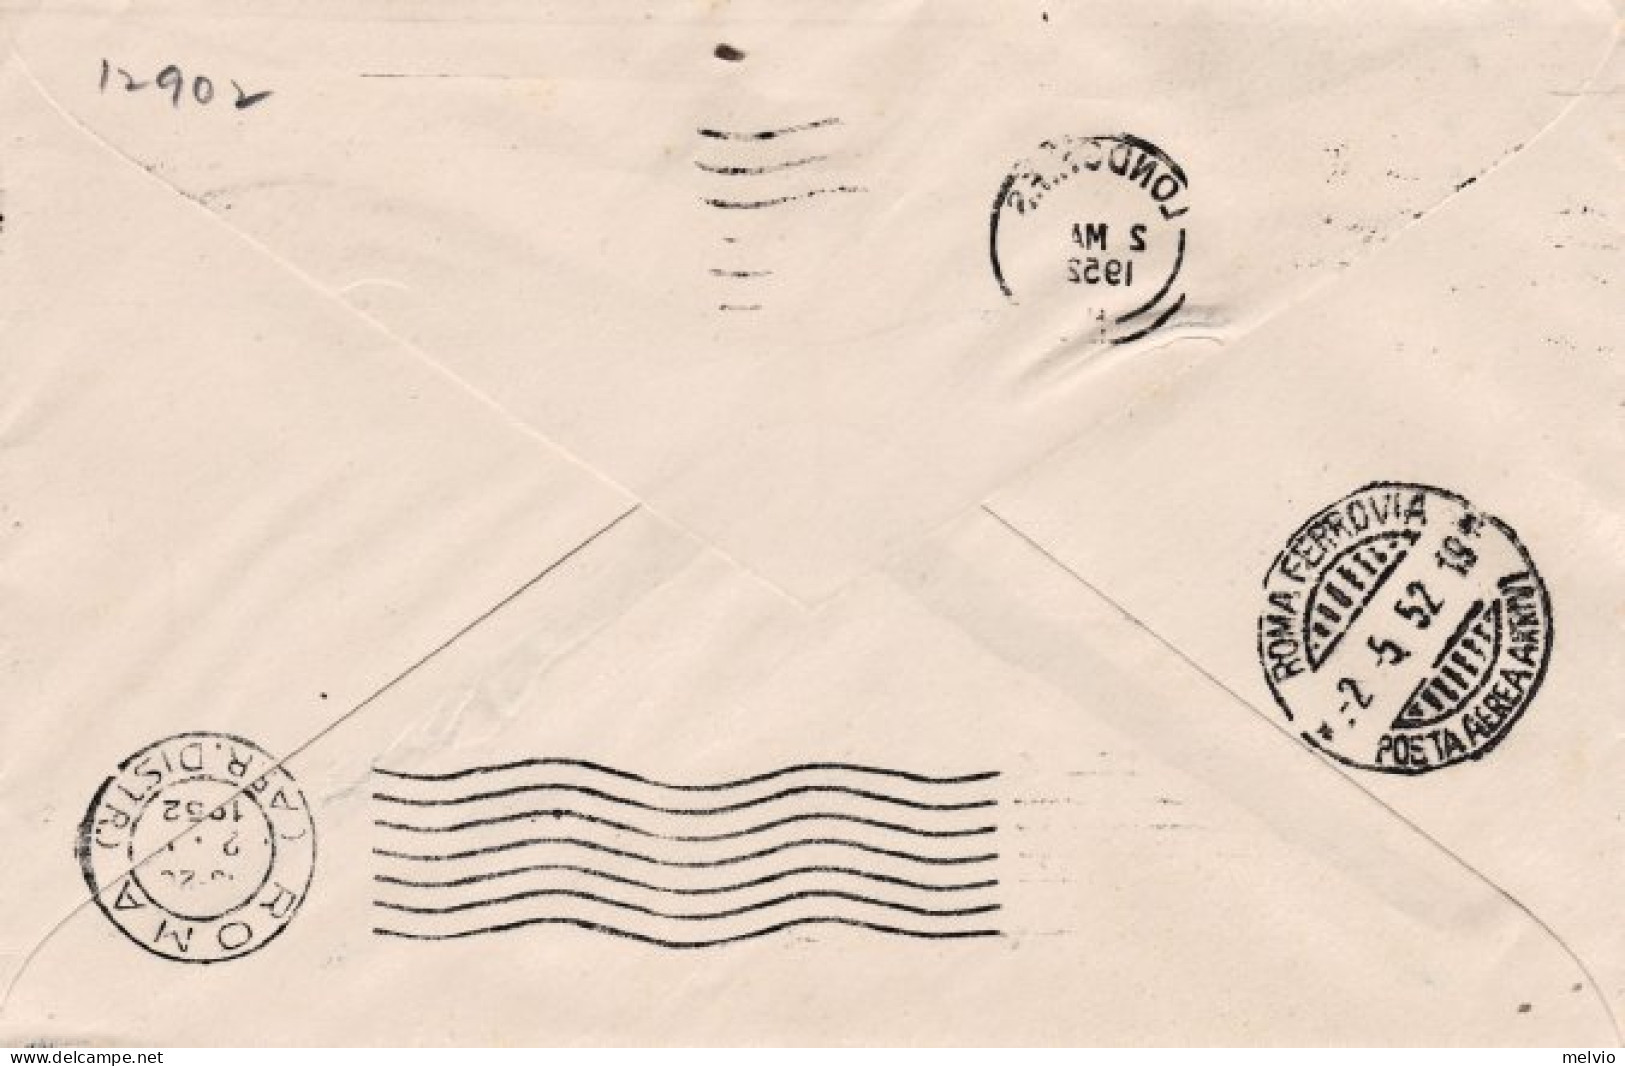 1952-Gran Bretagna Cat.Pellegrini N.446 Euro 220, I^volo BOAC Londra Roma Del 2  - Briefe U. Dokumente